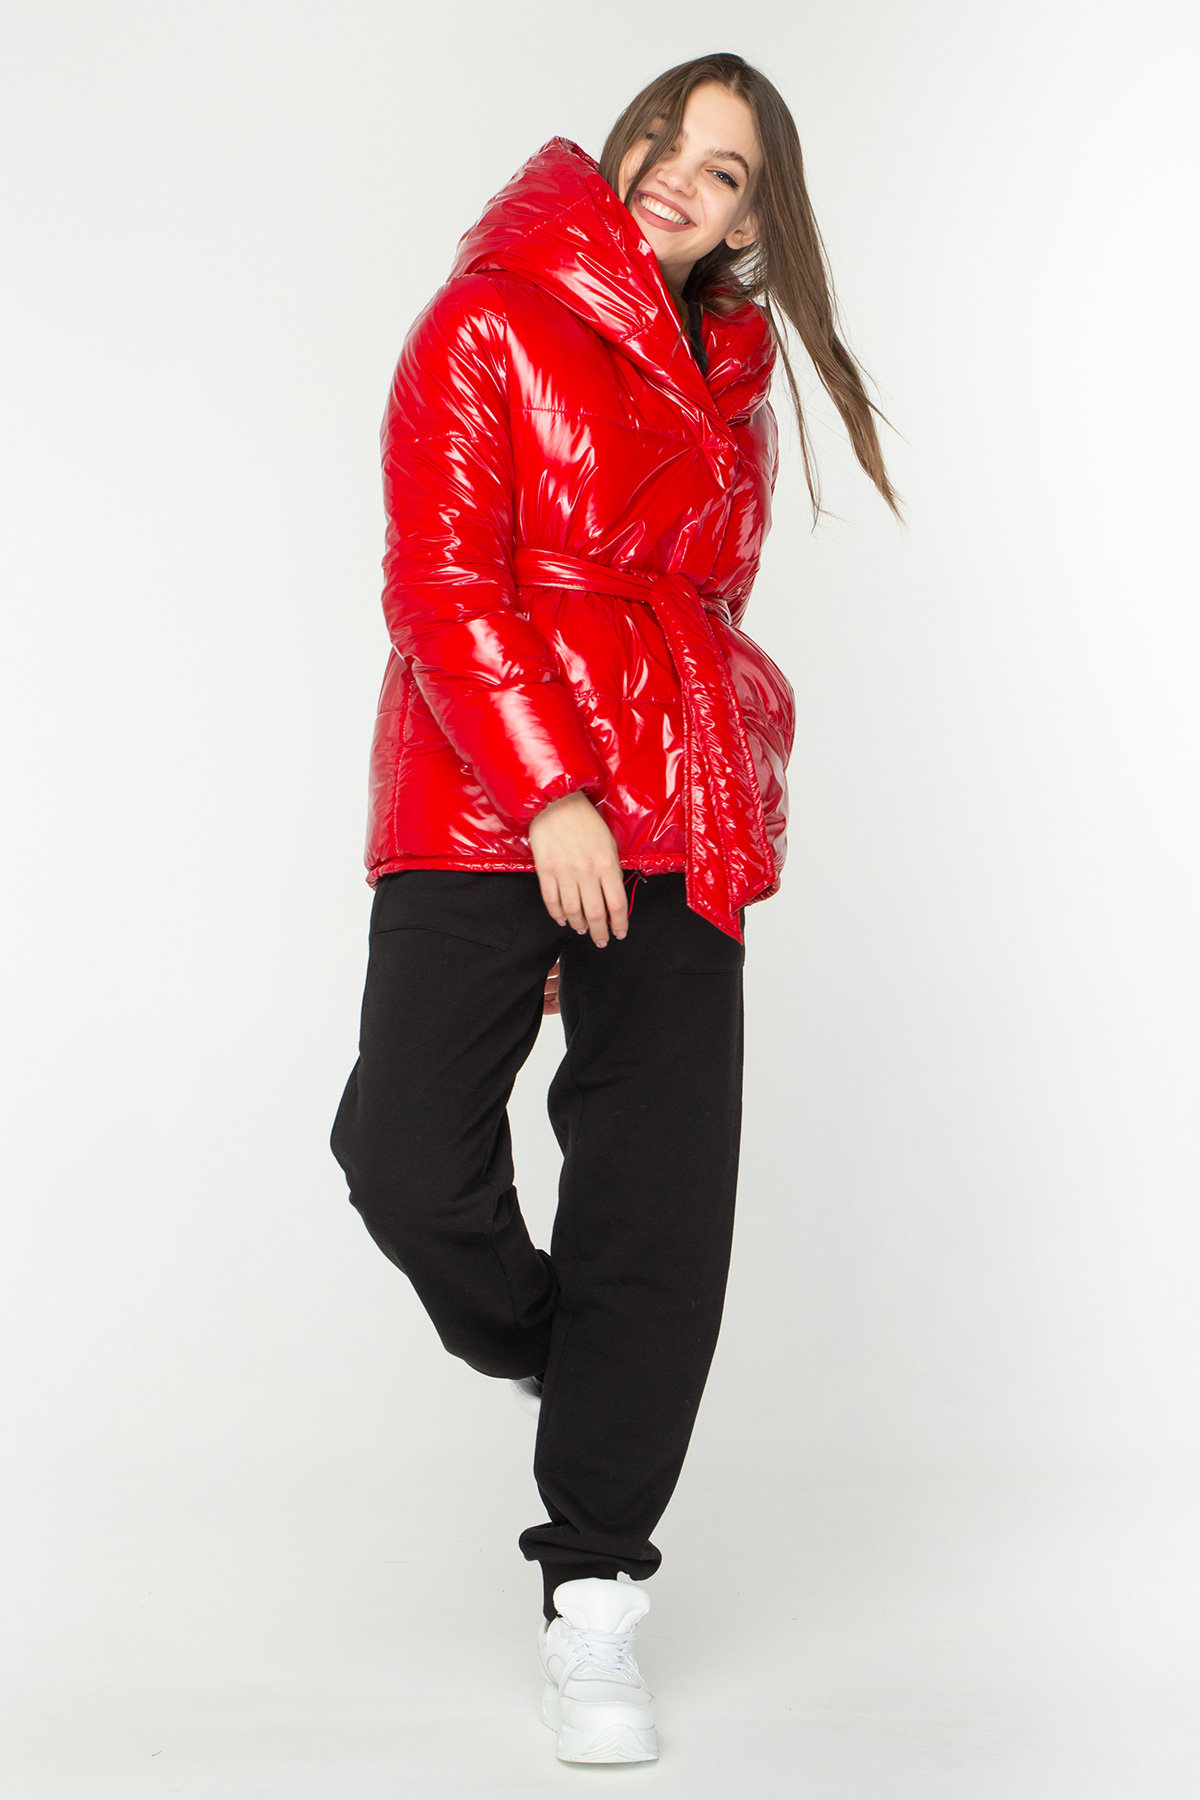 Лаковая куртка пуховик с поясом Бумер 8696 АРТ. 45034 Цвет: Красный - фото 5, интернет магазин tm-modus.ru